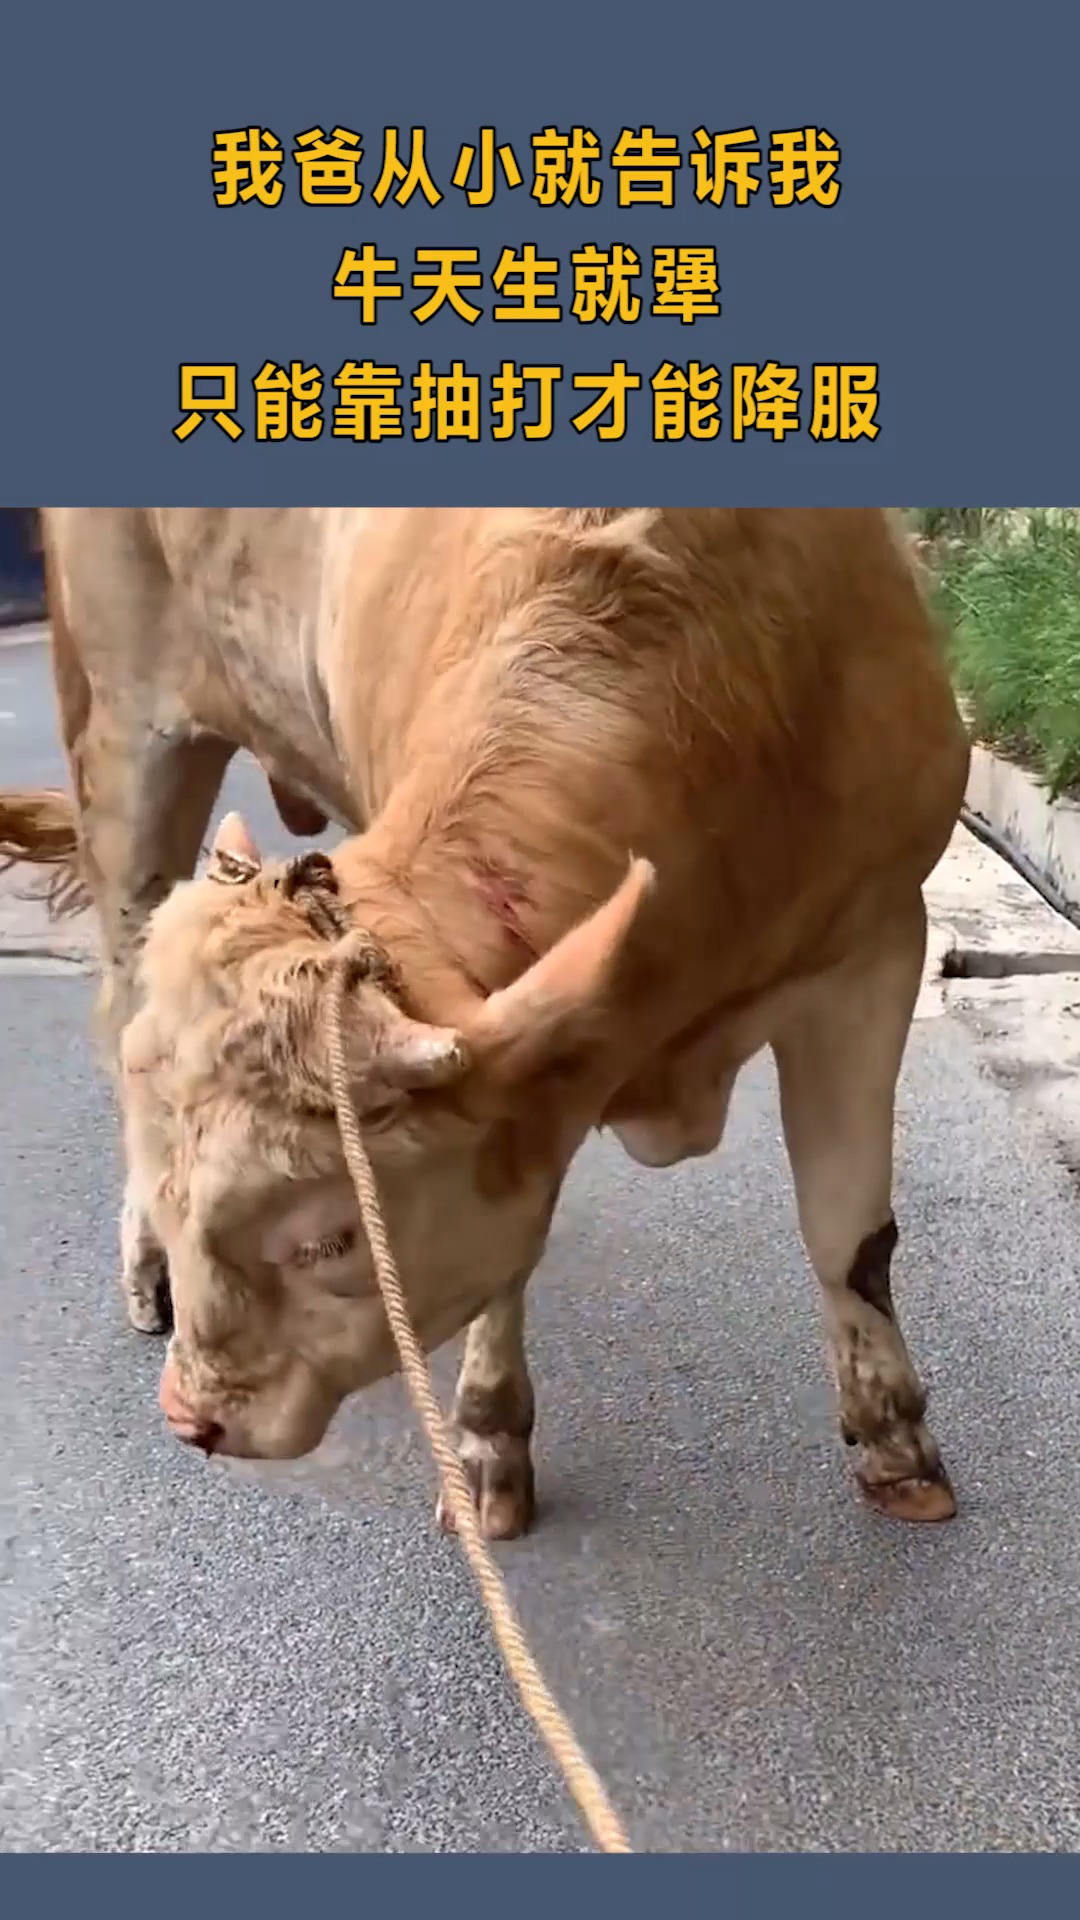 几乎所有农村人都知道,牛这种动物,不打它就不会听话!